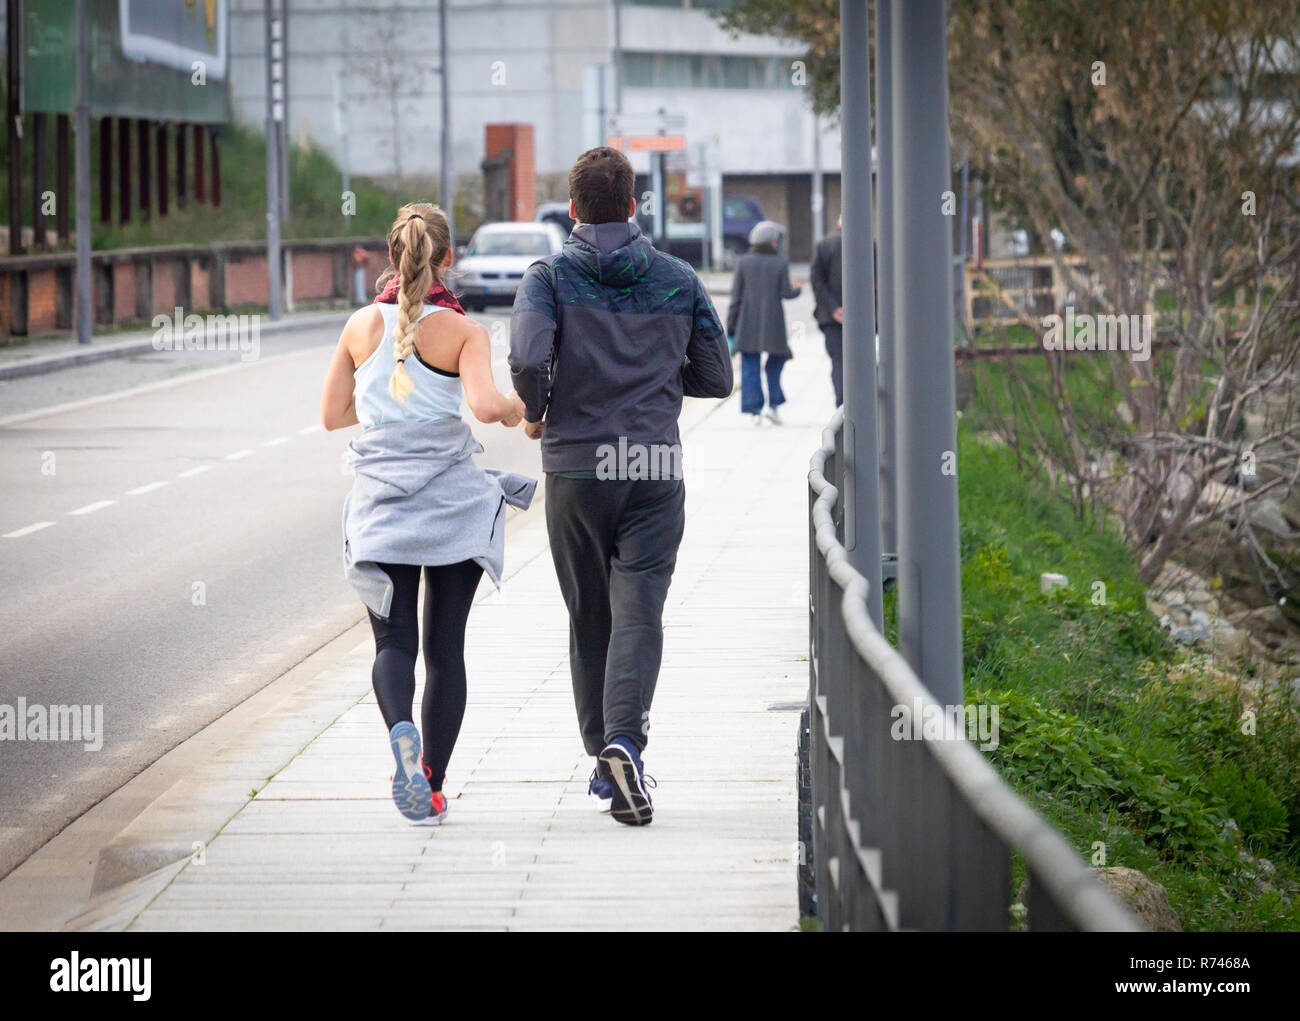 Junges Paar läuft in der Nähe von eine asphaltierte Straße. Blonden Pferdeschwanz Mädchen und großer Mann. Ansicht von hinten. Stockfoto